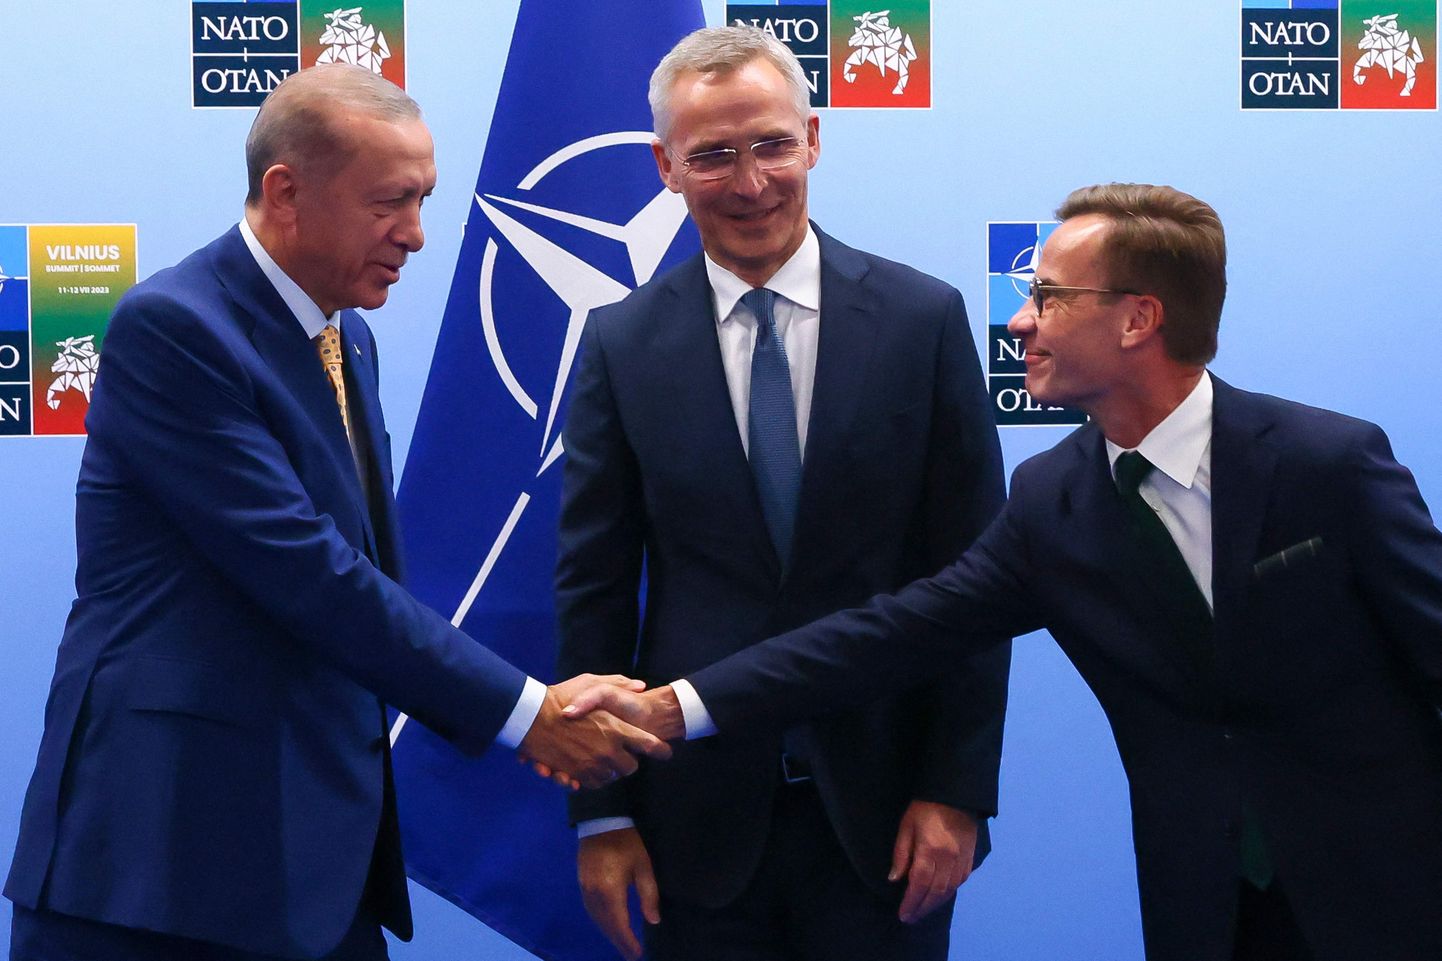 Президент Турции Тайип Эрдоган и премьер-министр Швеции Ульф Кристерссон пожимают друг другу руки перед генеральным секретарем НАТО Йенсом Столтенбергом.